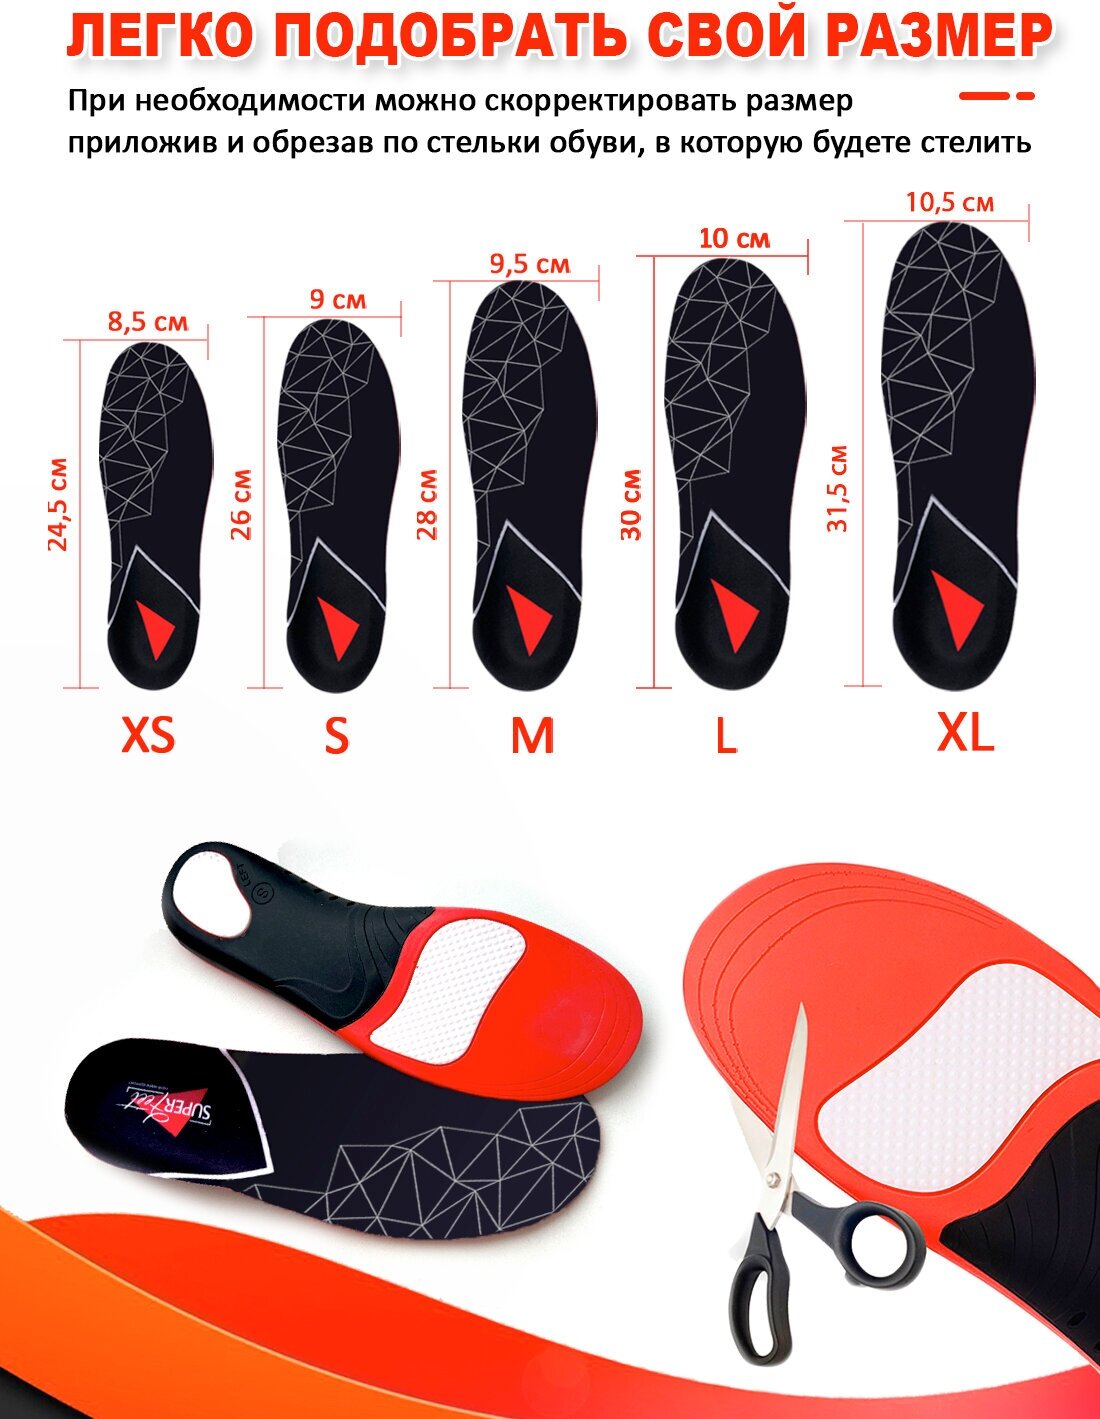 Стельки ортопедические спортивные Super Feet S (38-40) для обуви при плоскостопии